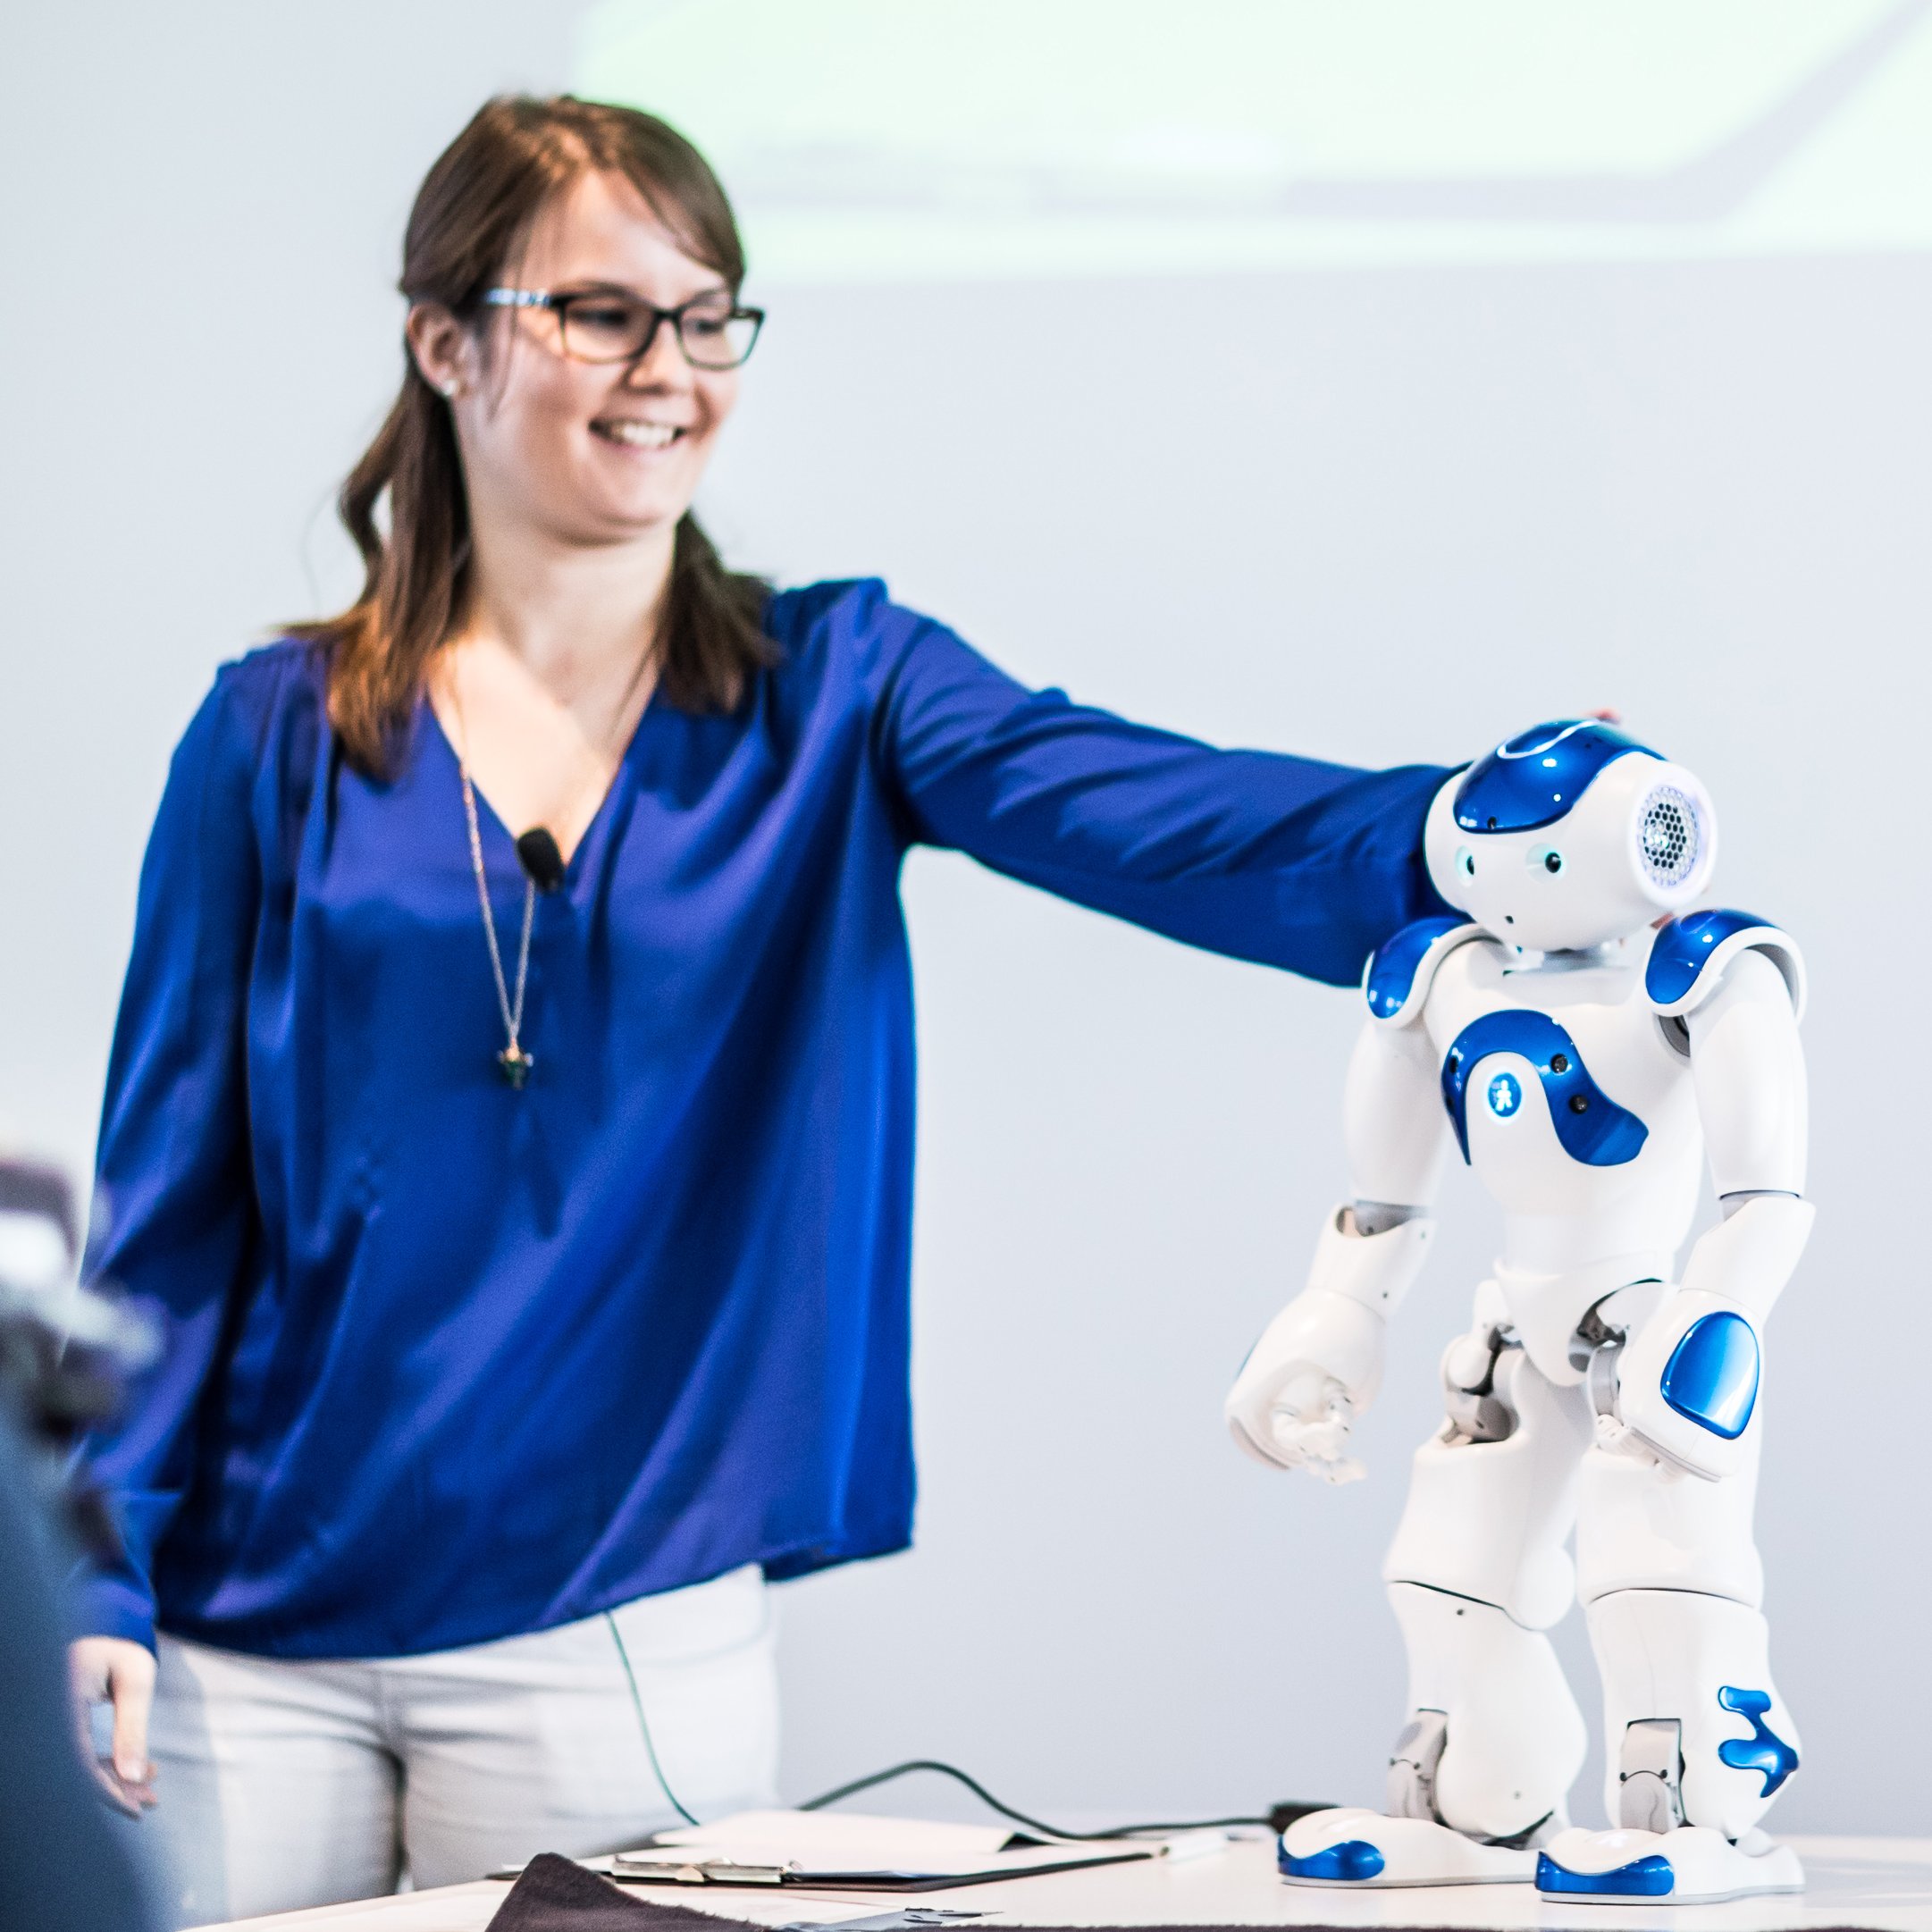 Frau in blauer Bluse mit einem kleinen Roboter auf einem Tisch